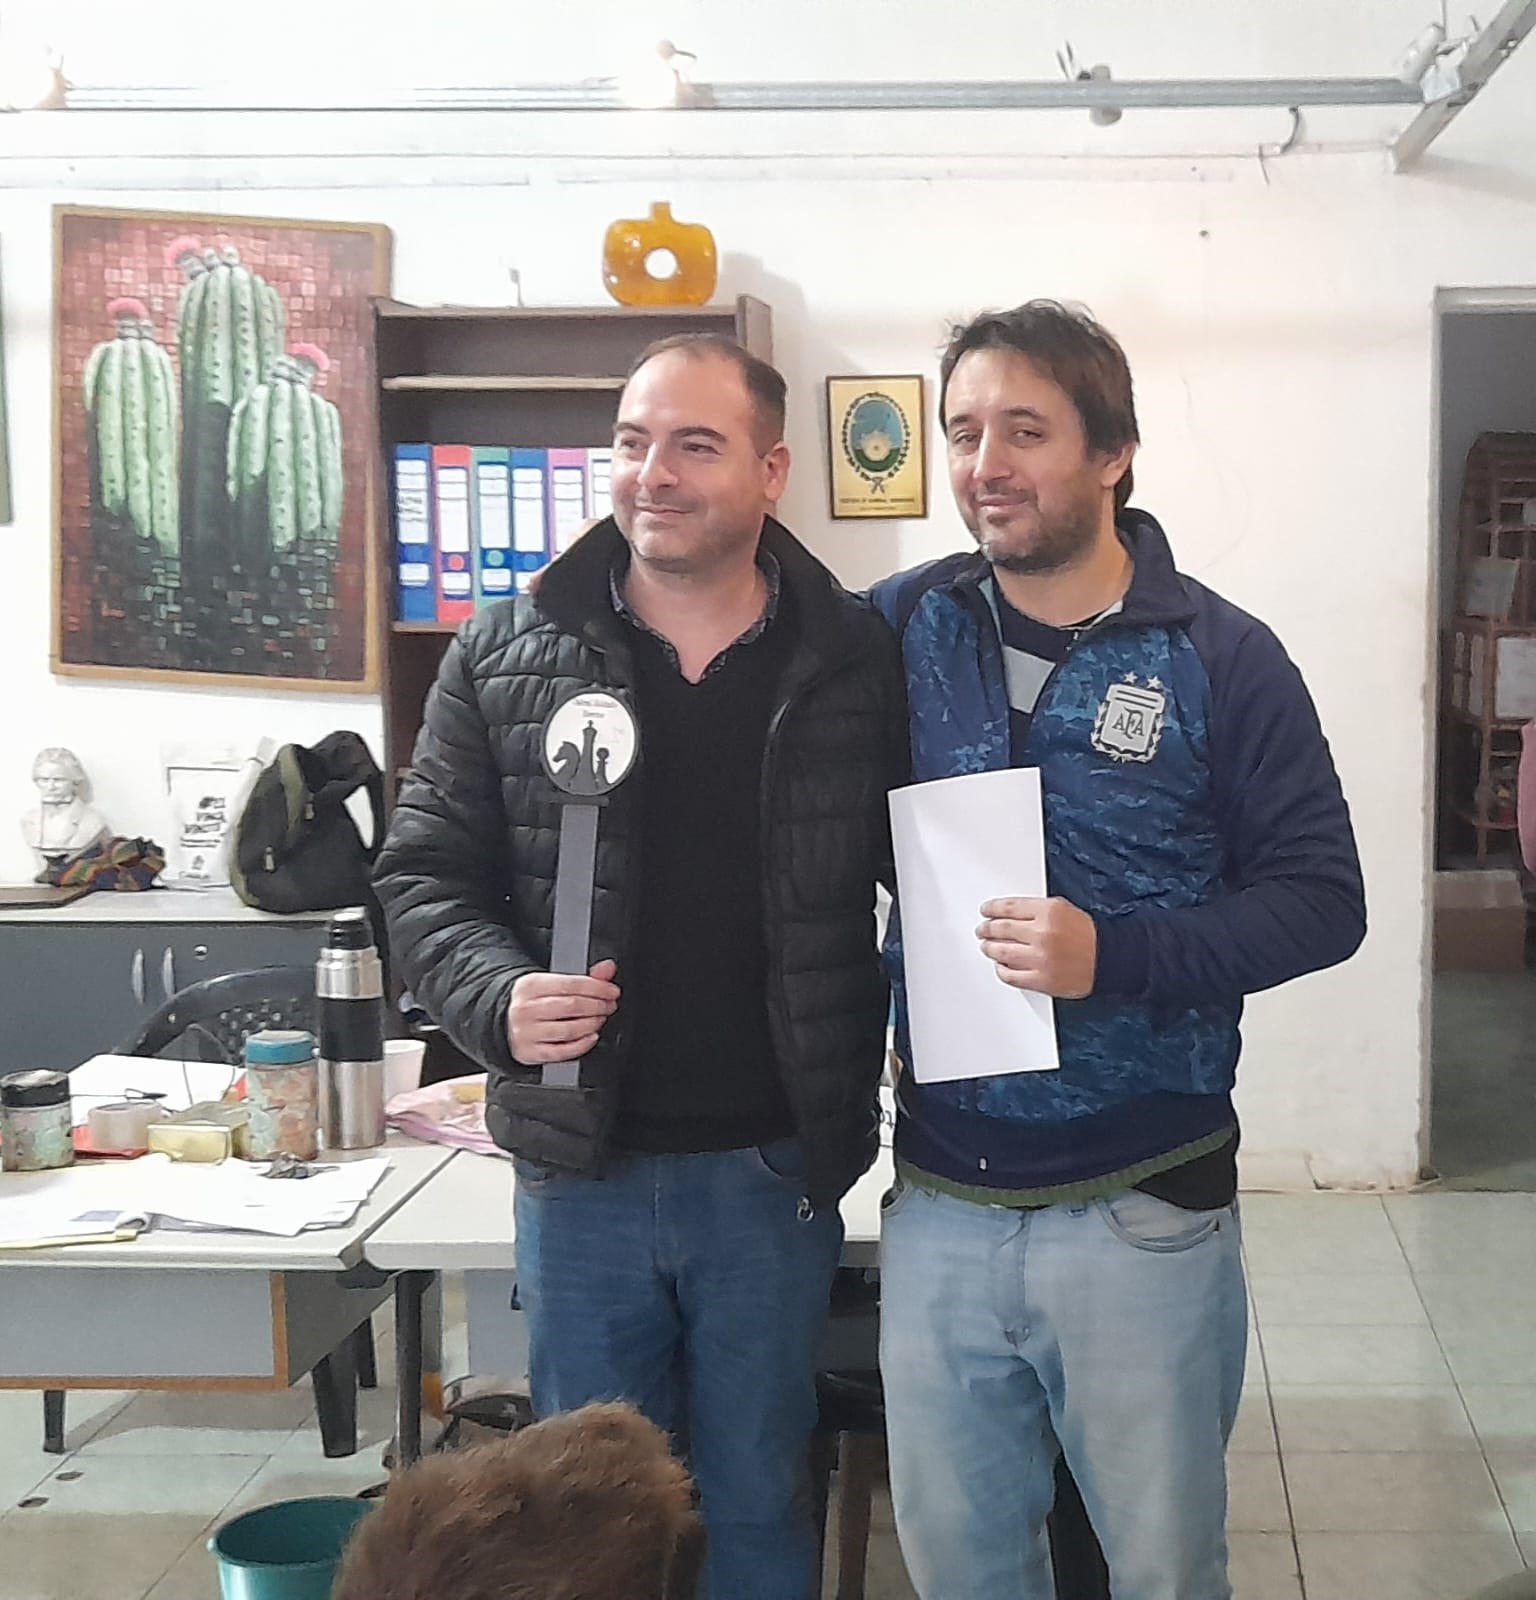 Pablo Salinardi, ganador del torneo, junto al profesor organizador Enrique Contessotto